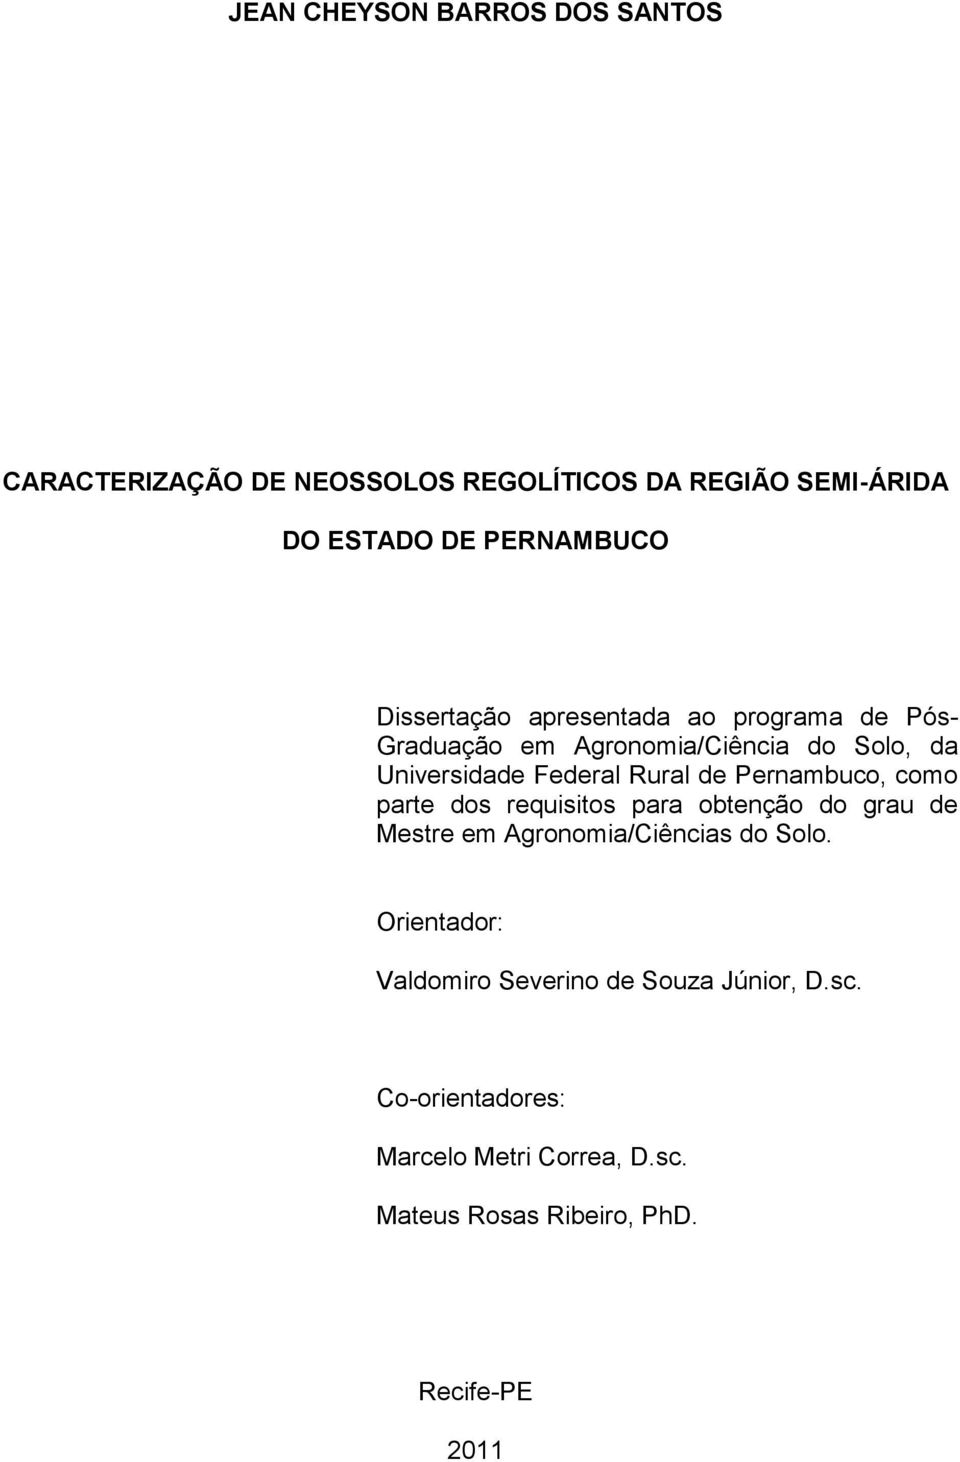 Pernambuco, como parte dos requisitos para obtenção do grau de Mestre em Agronomia/Ciências do Solo.